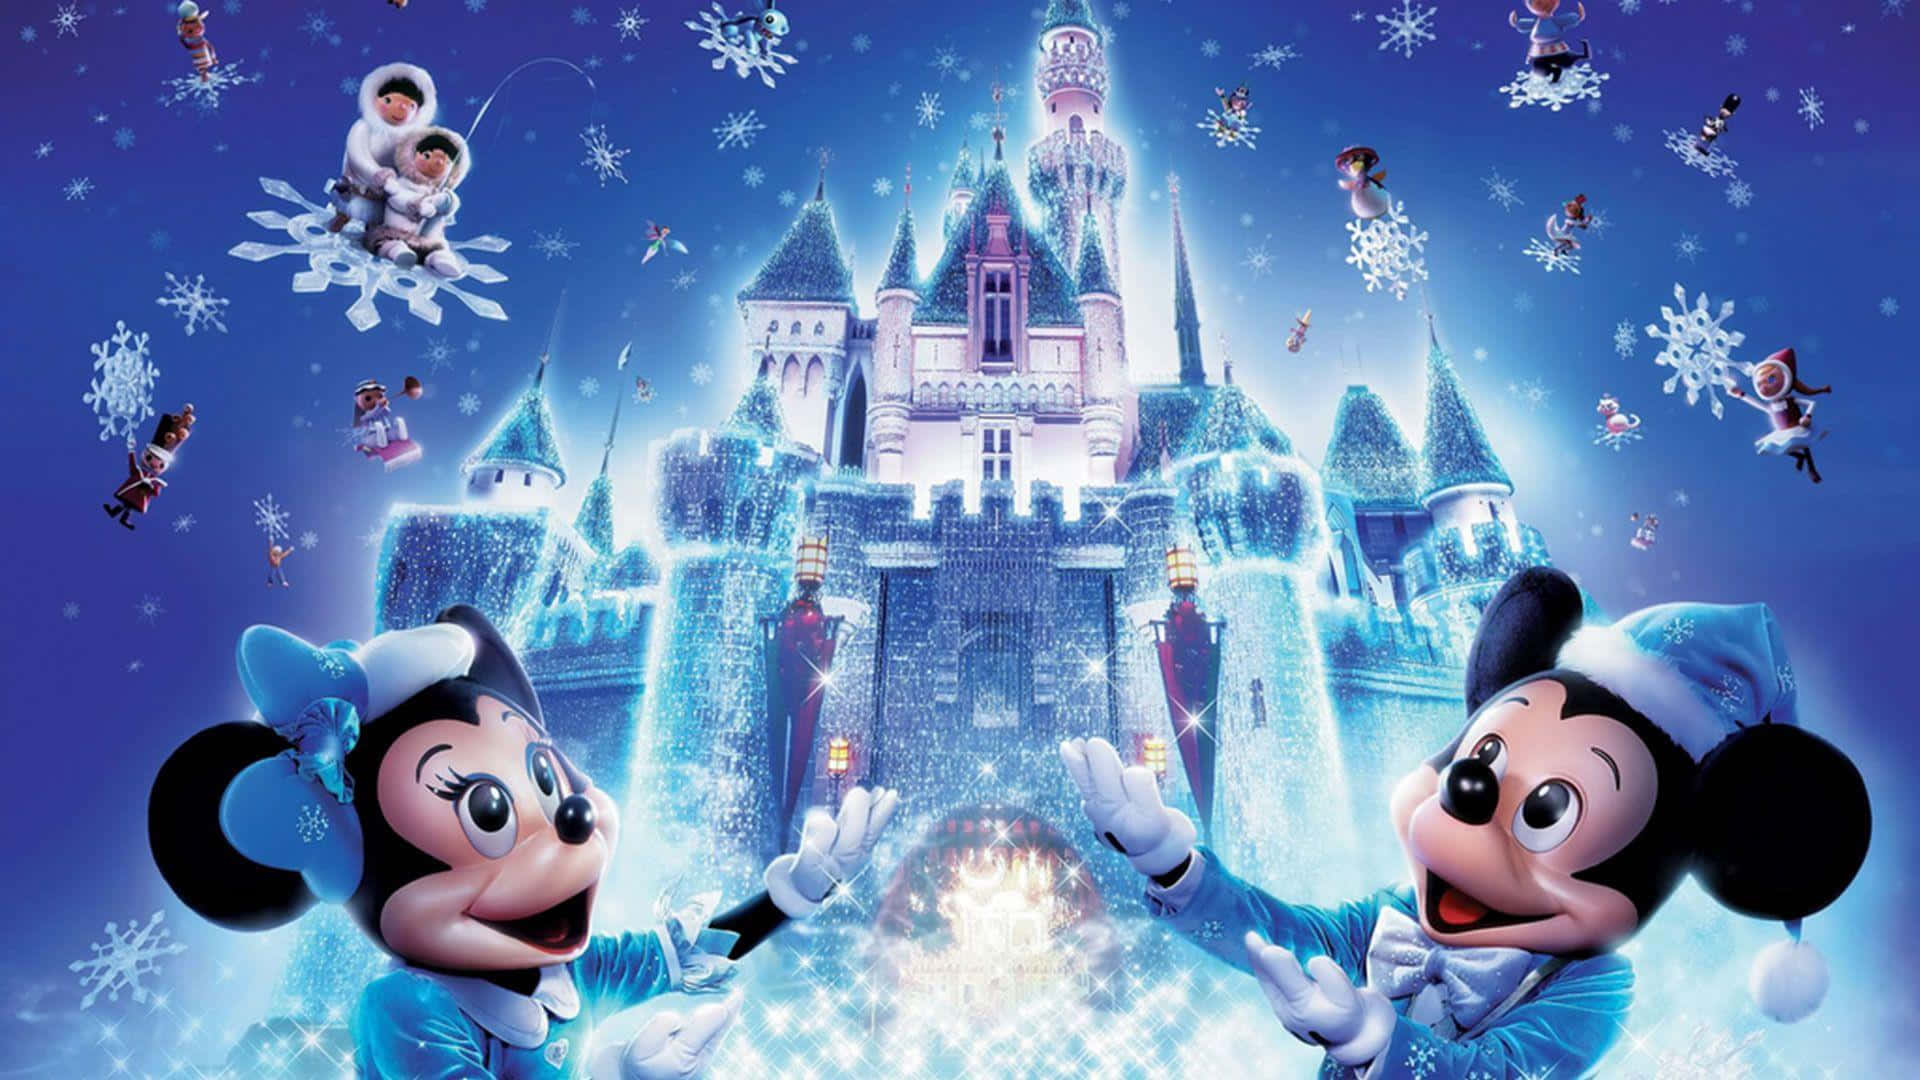 Melhorpapel De Parede Da Disney Minnie E Mickey Mouse No Castelo De Gelo.